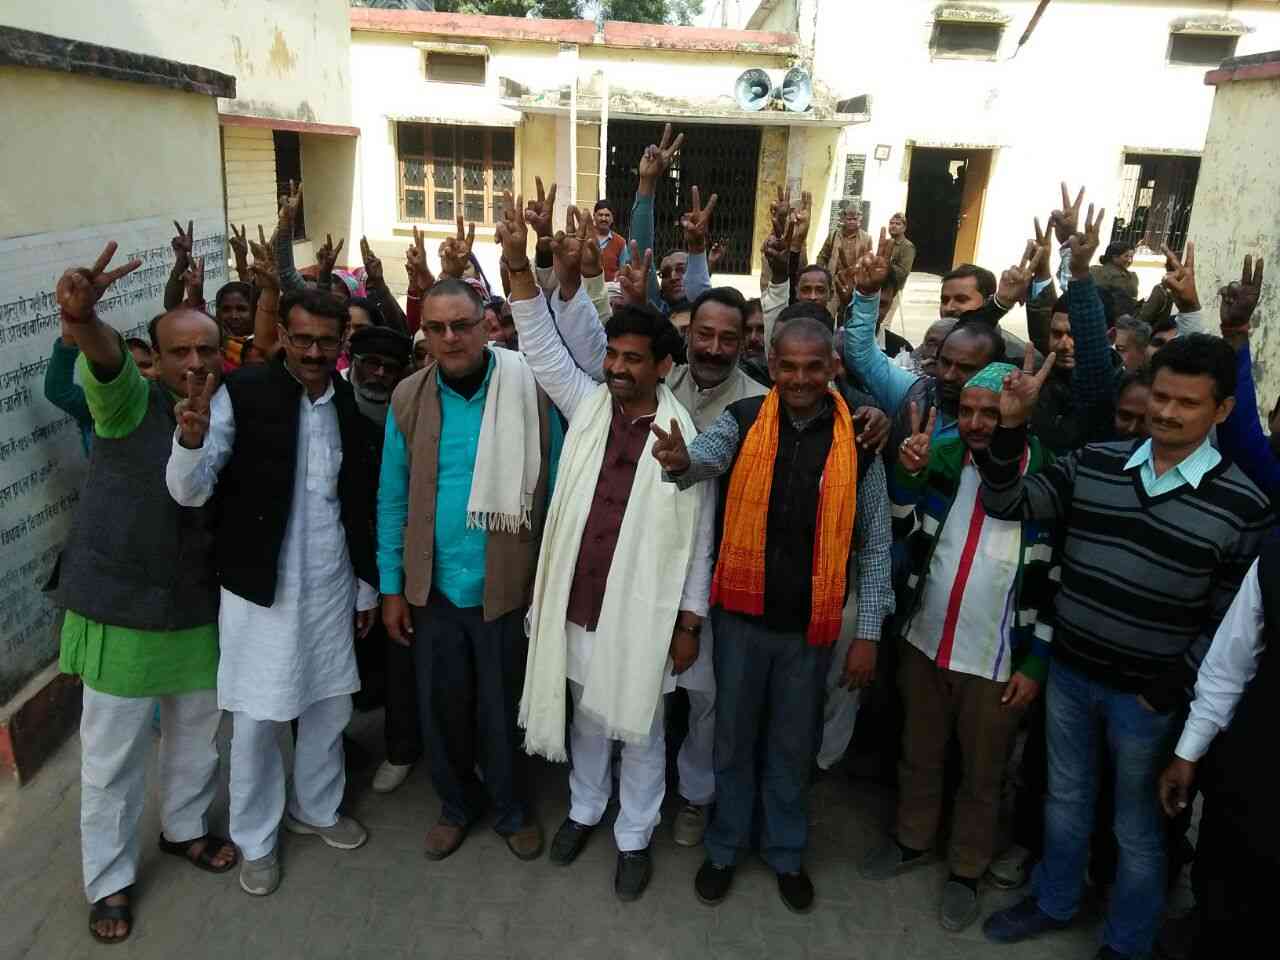 BREAKING: जौनपुर में सपा ने 56 वोटों से खो दी अपनी जीती हुई सीट, ये है पूरी
कहानी